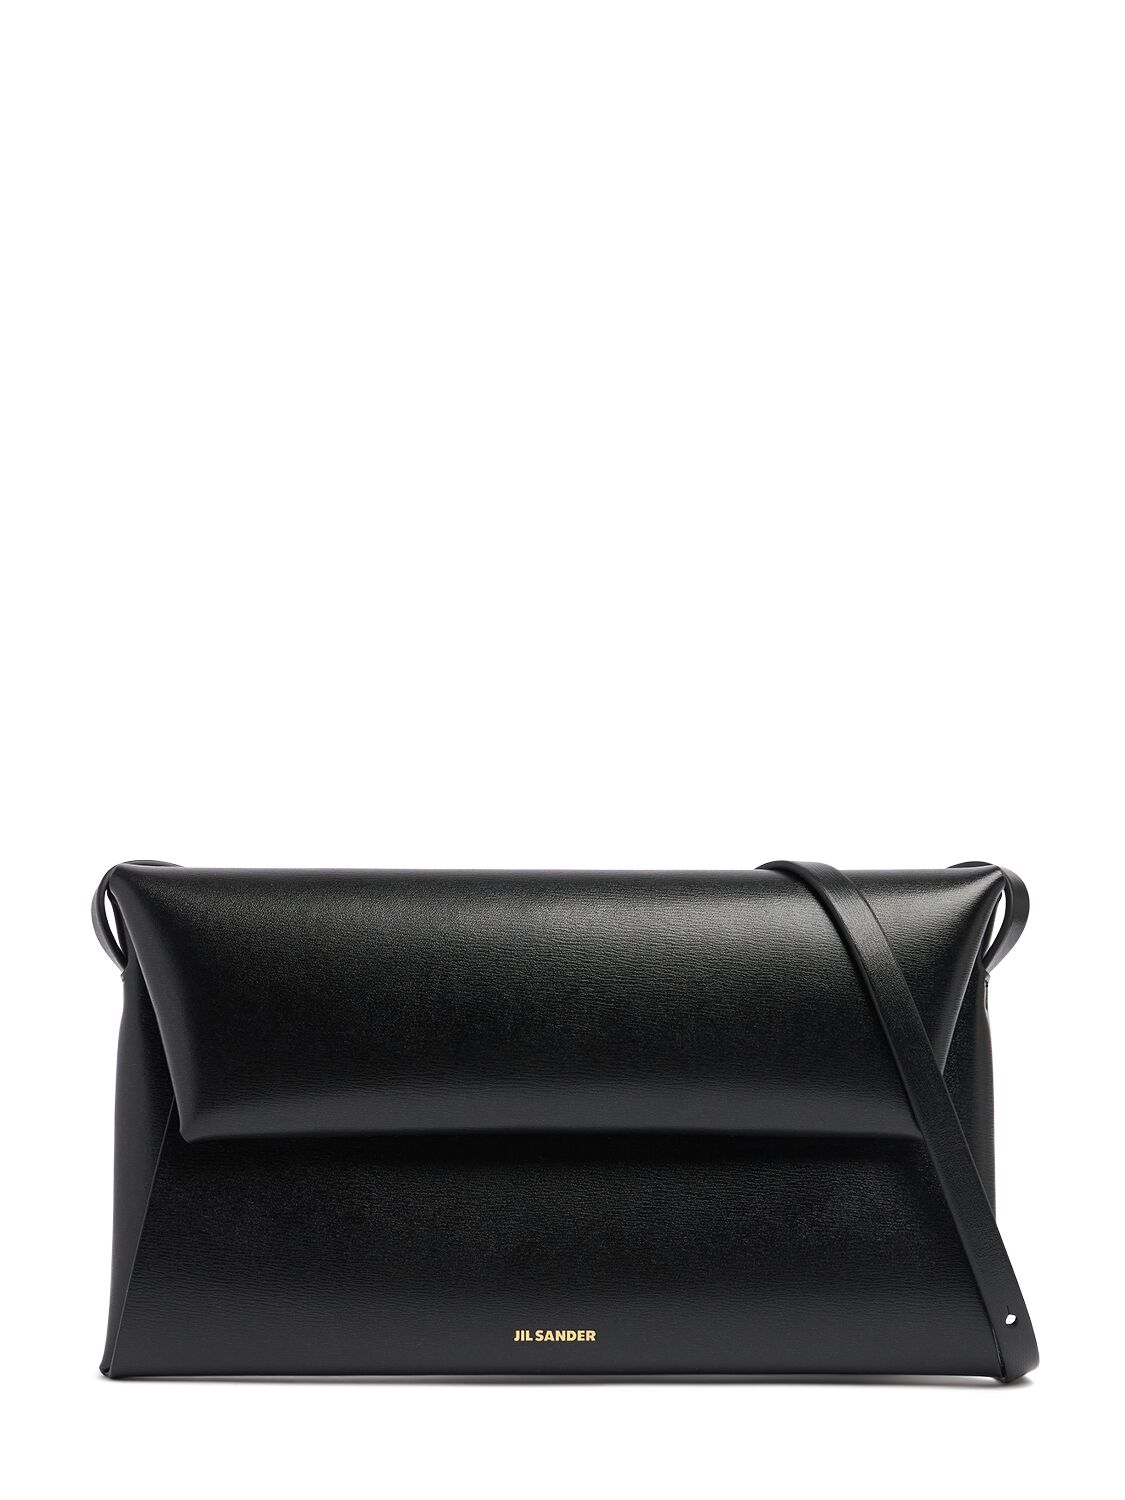 Jil Sander Small Folded Palmellato Leather Bag In Black